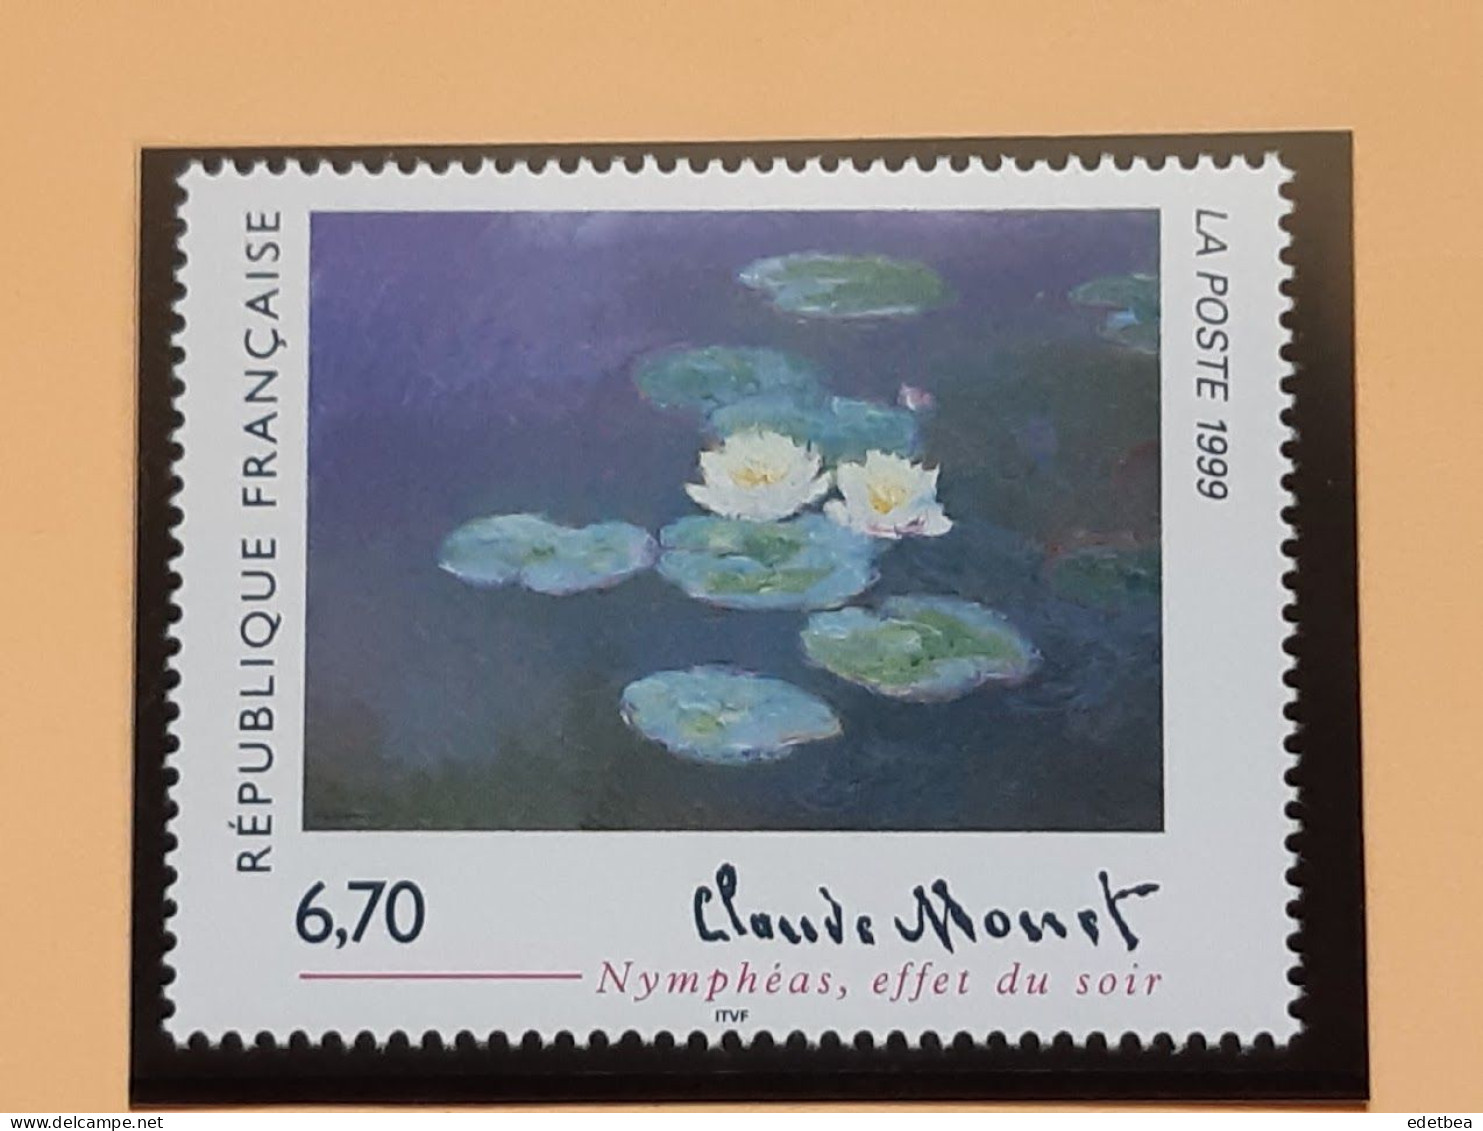 Timbre – France -1999 -n° 3247 – Oeuvre  De Claude MONET : Nymphéas -Etat : Neuf - Unused Stamps